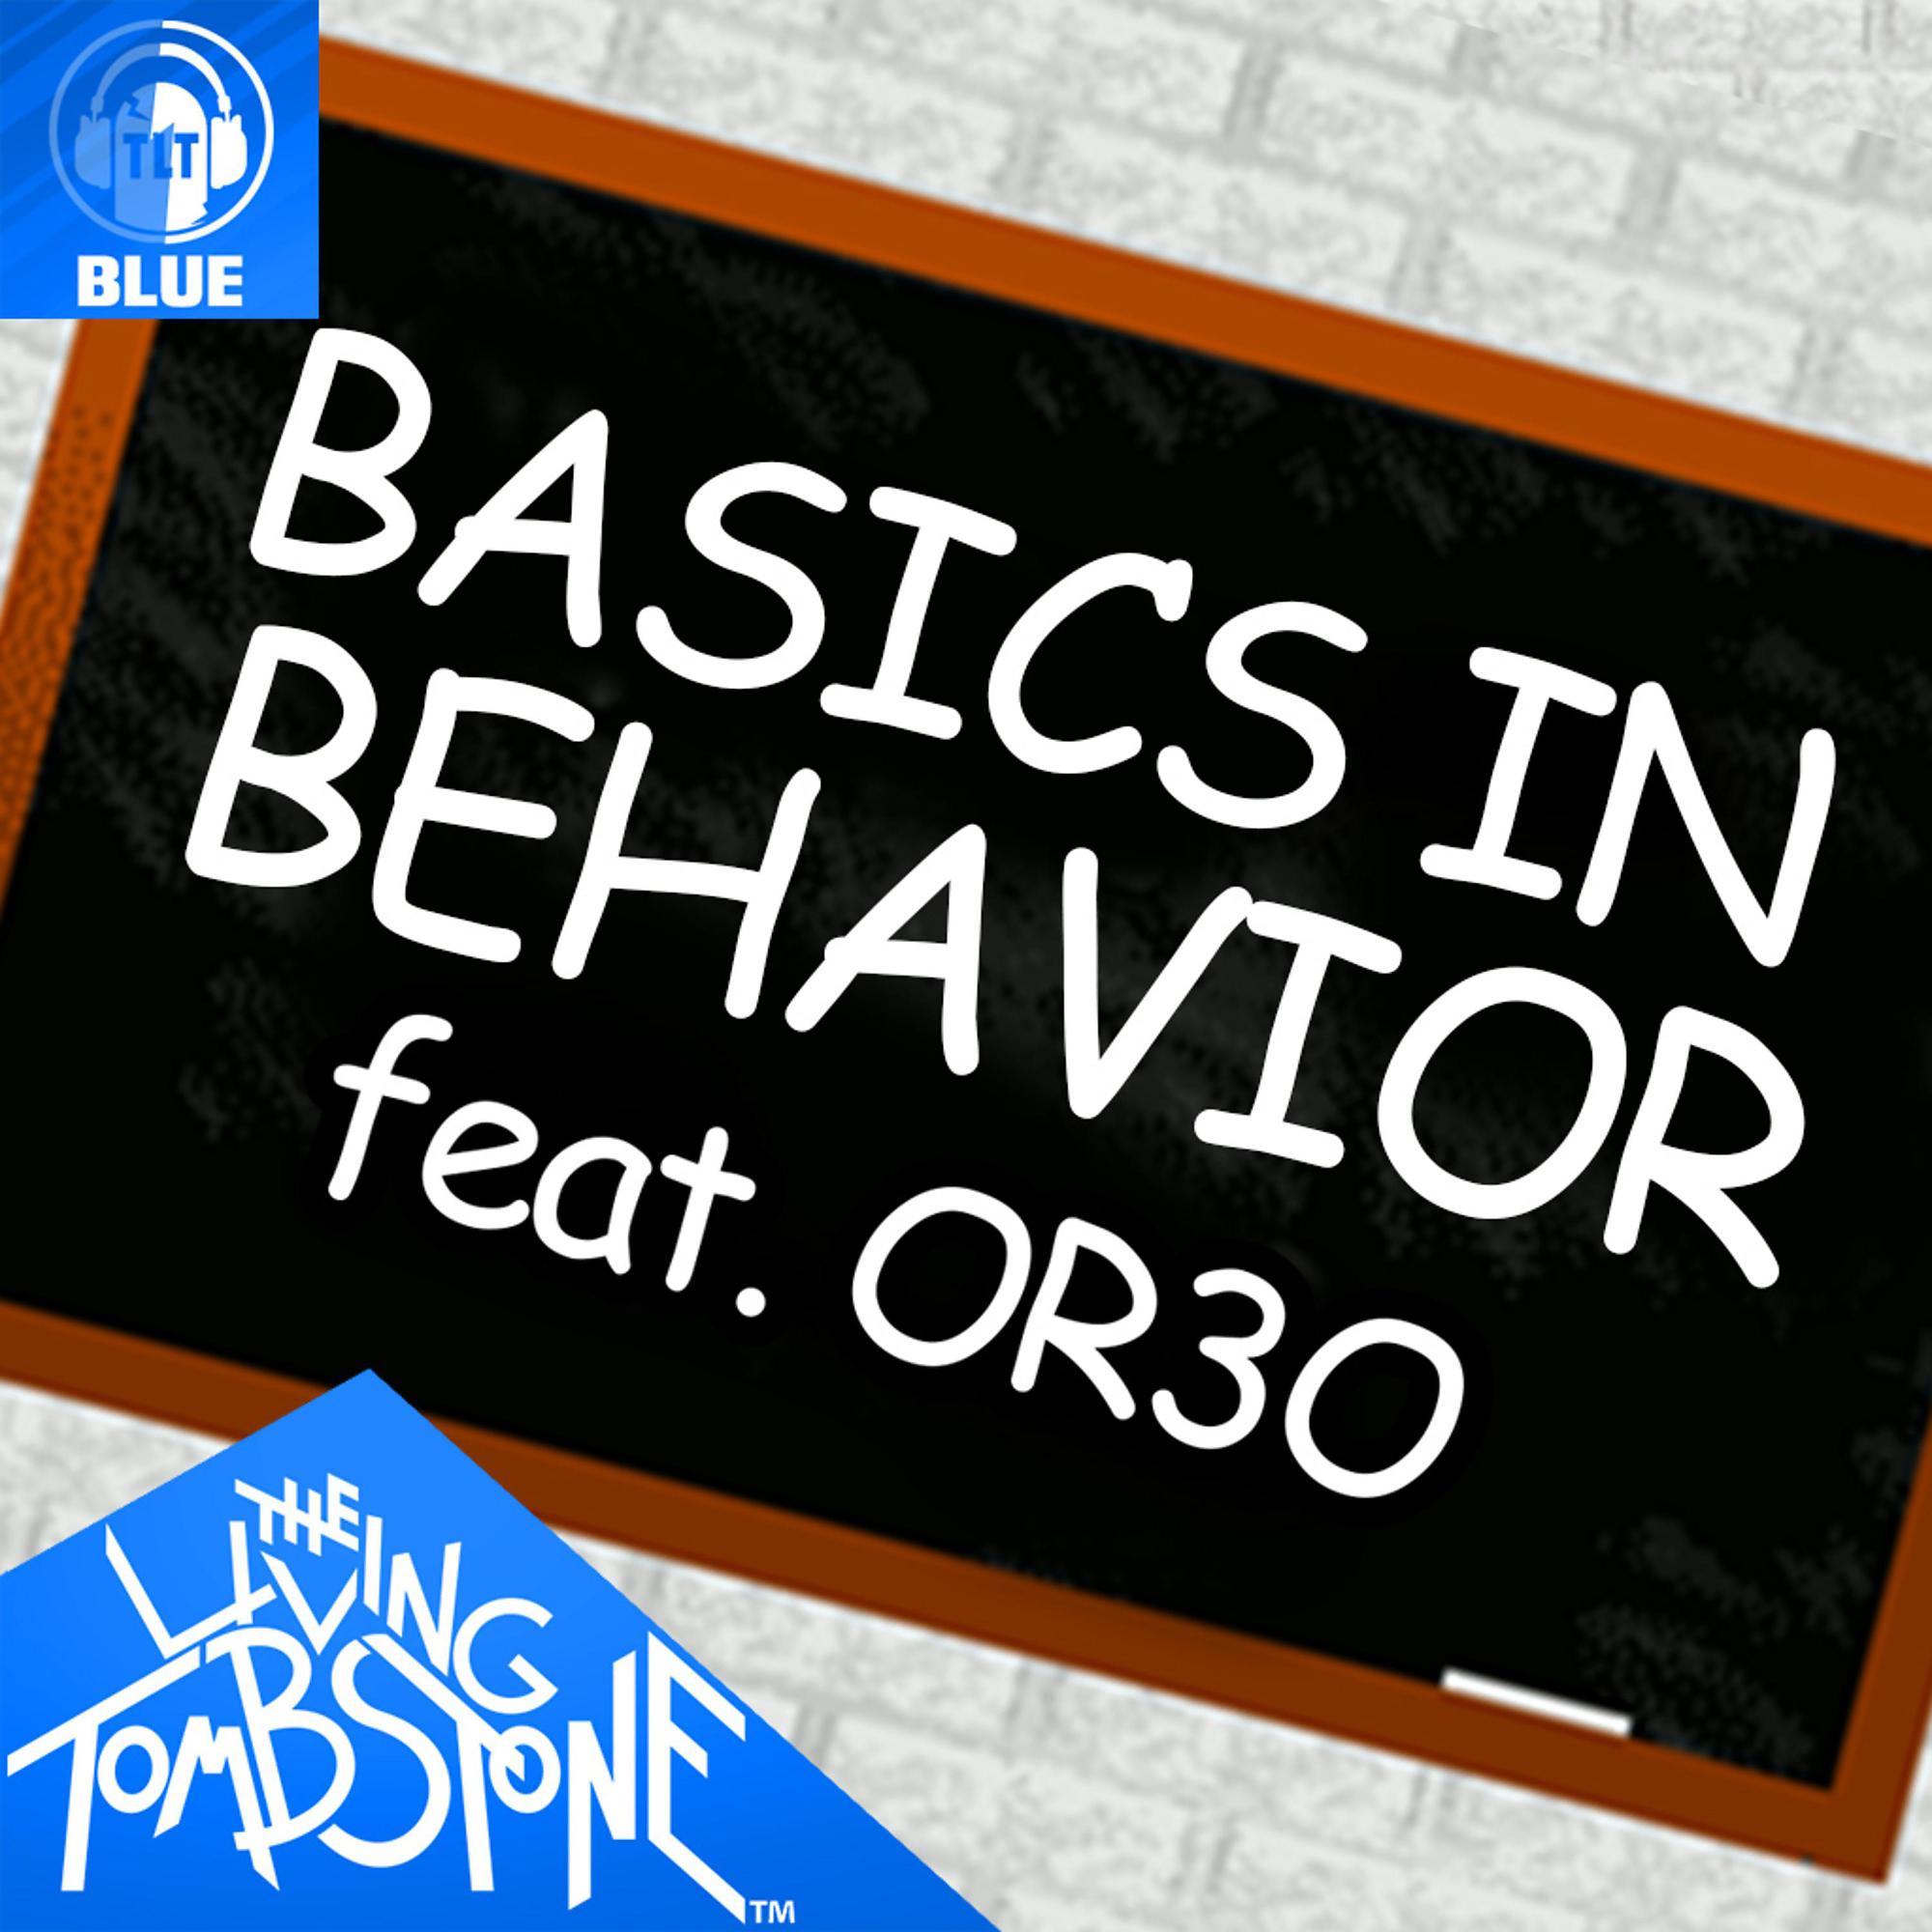 Basics in behavior the living. Basics in Behavior the Living Tombstone. Basics in Behavior or3o- Baldi's Basics the Living Tombstone. Basics in Behavior Blue.